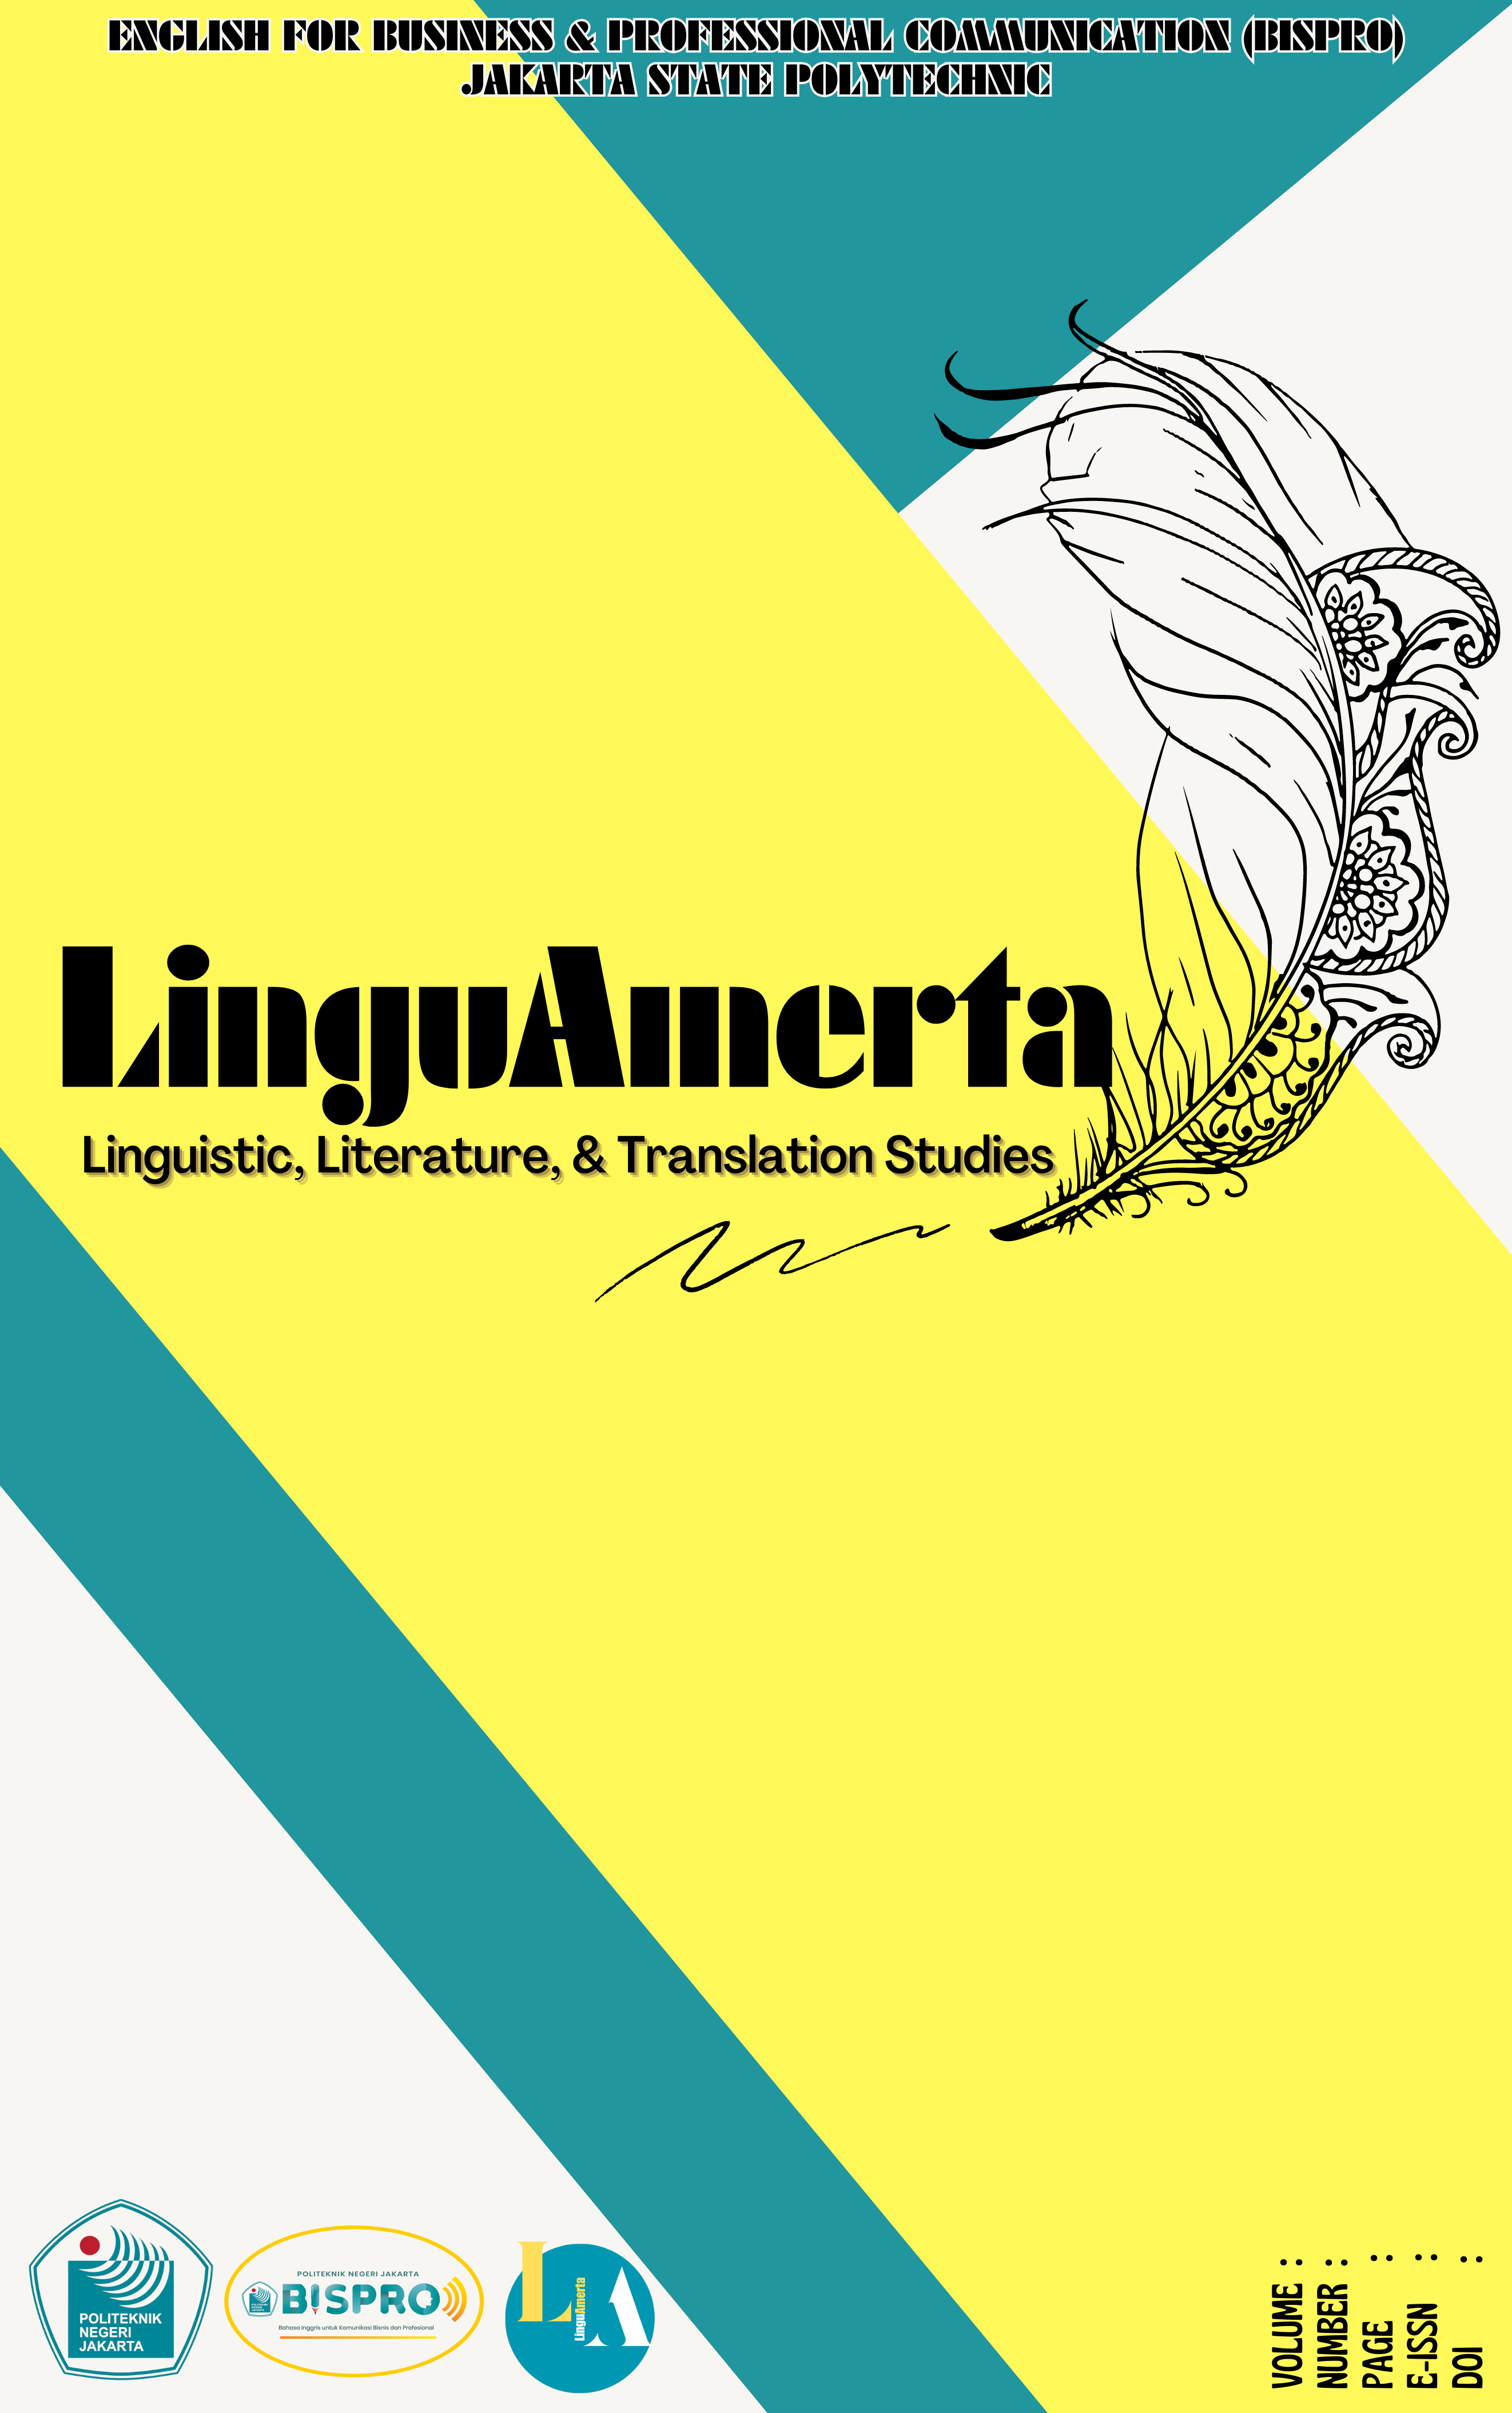 LinguAmerta